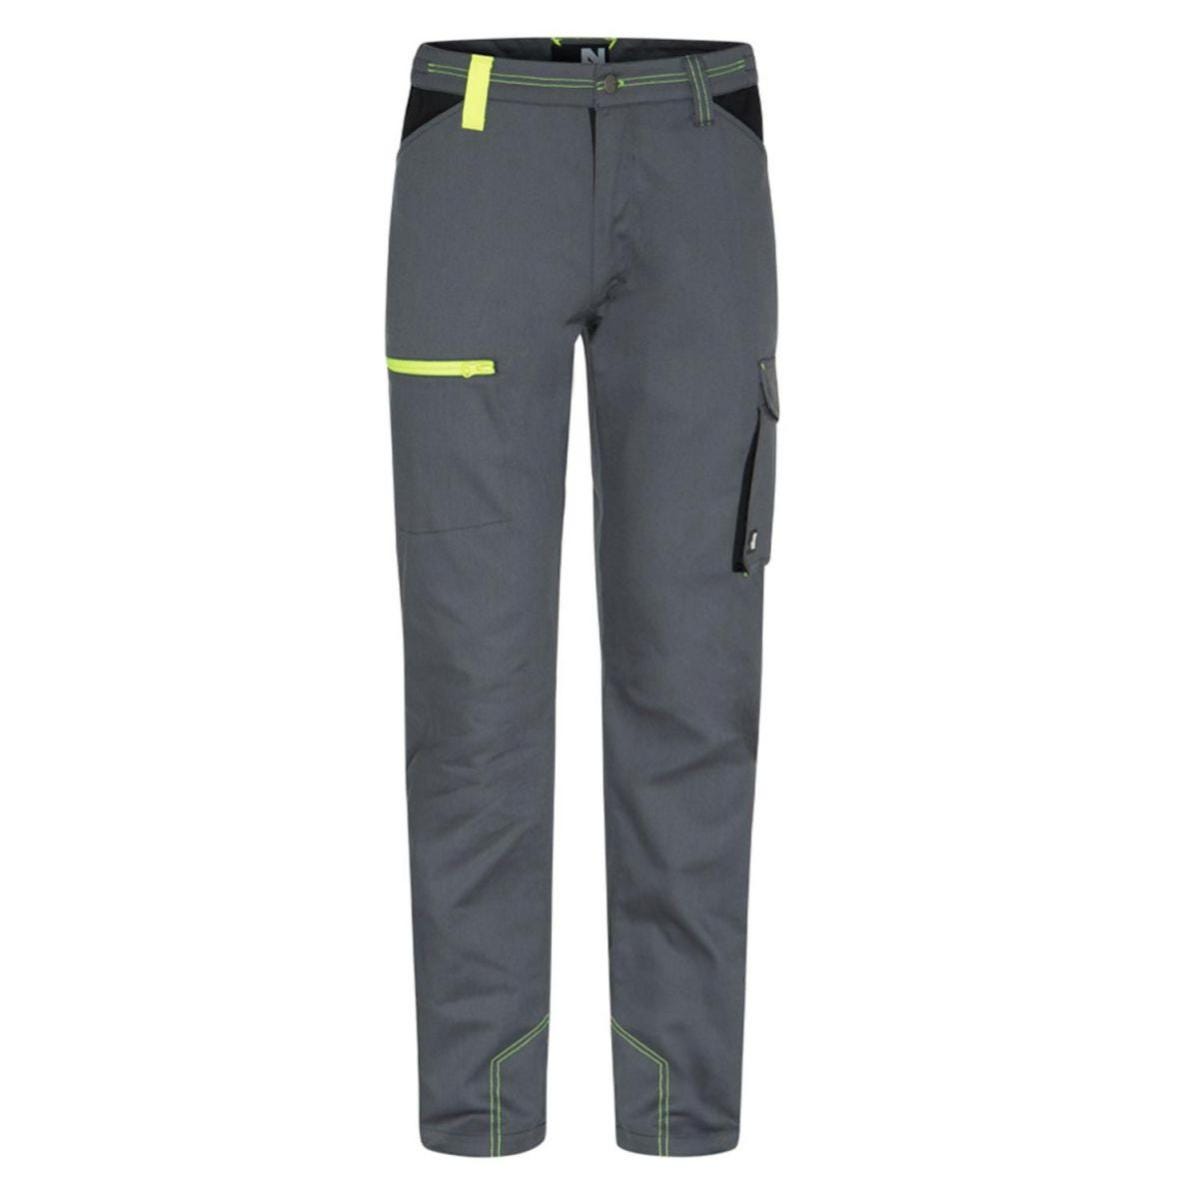 Pantalon Marlow gris et jaune fluo - North Ways - Taille XL 1